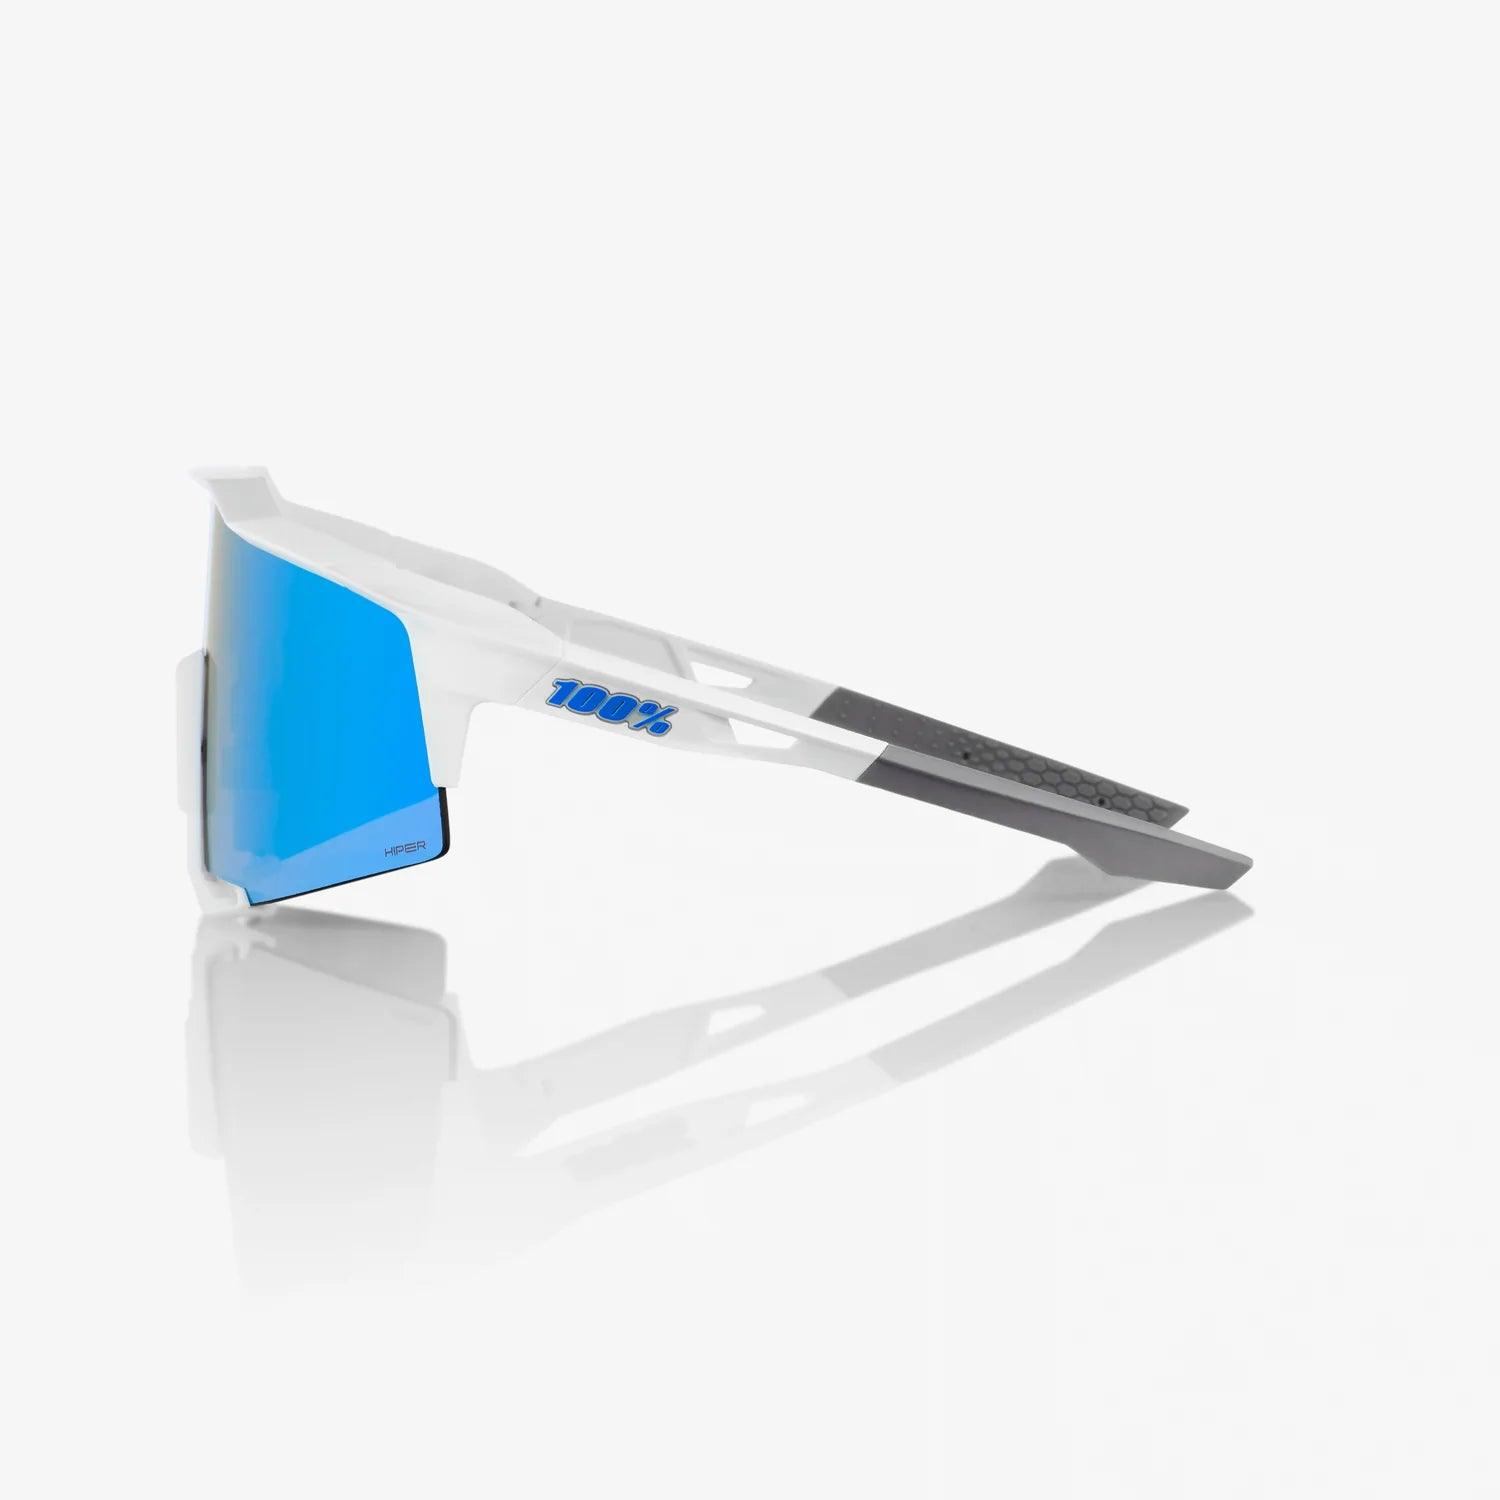 100% SPEEDCRAFT - Matte White - HiPER Blue Multilayer Mirror Lens - Smash It Sports